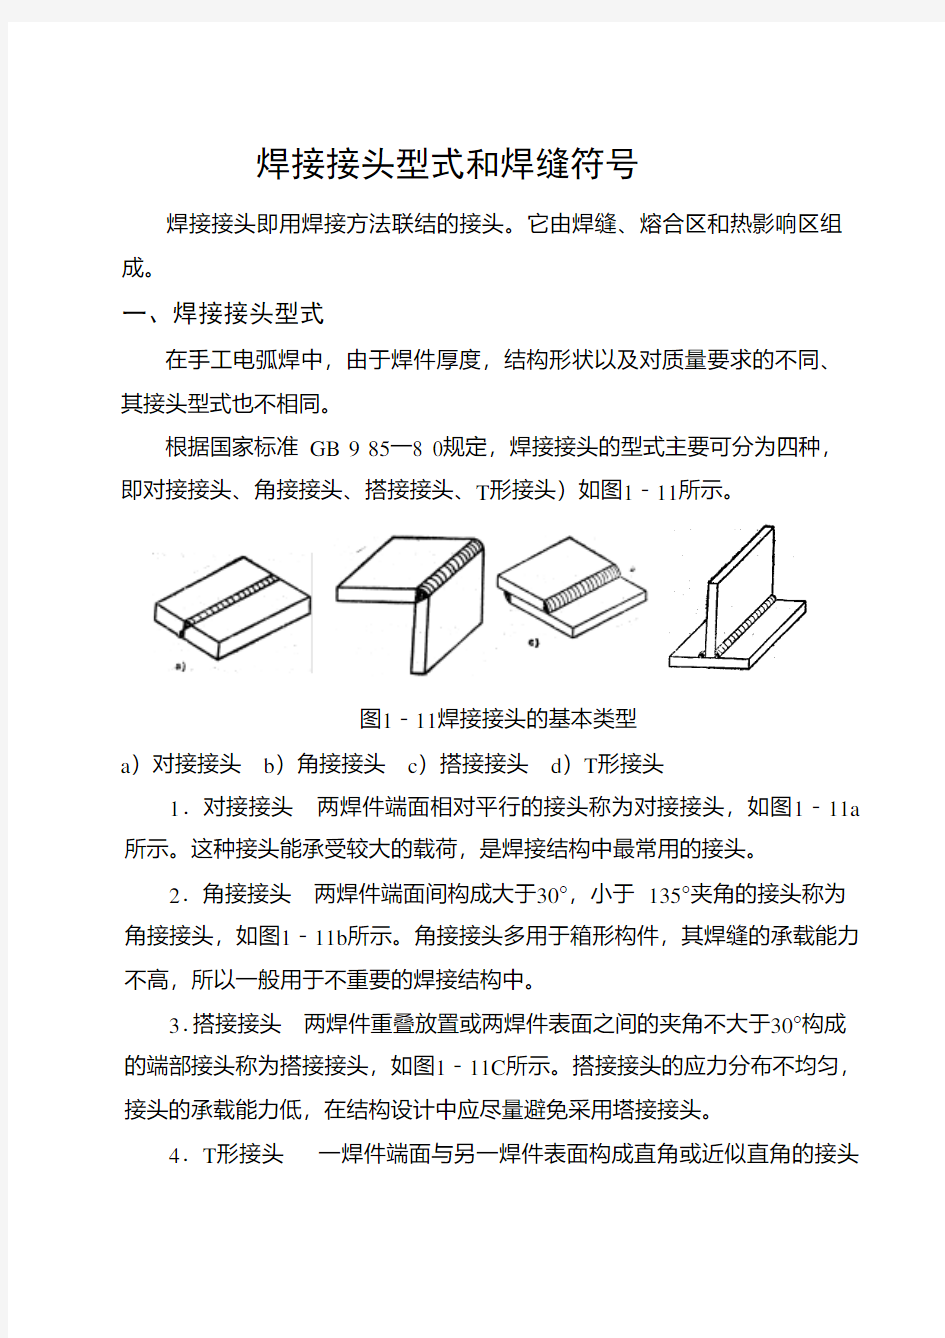 焊接接头形式和焊缝符号